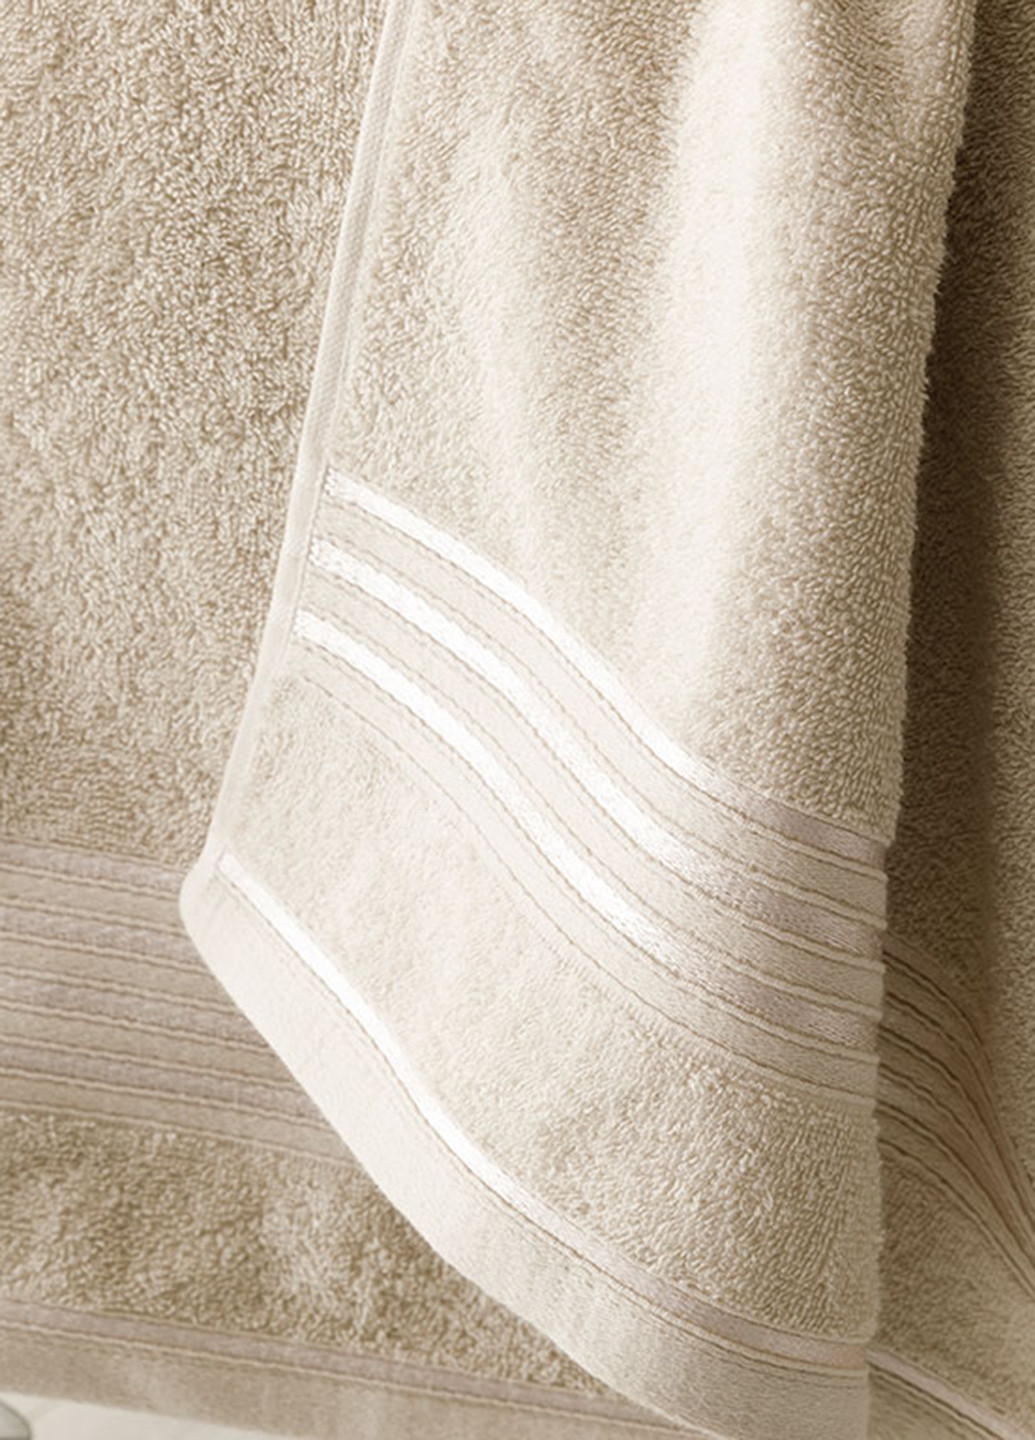 English Home полотенце romantic stripe (2 шт.) 50х85 см, 70х150 см однотонный серый производство - Турция